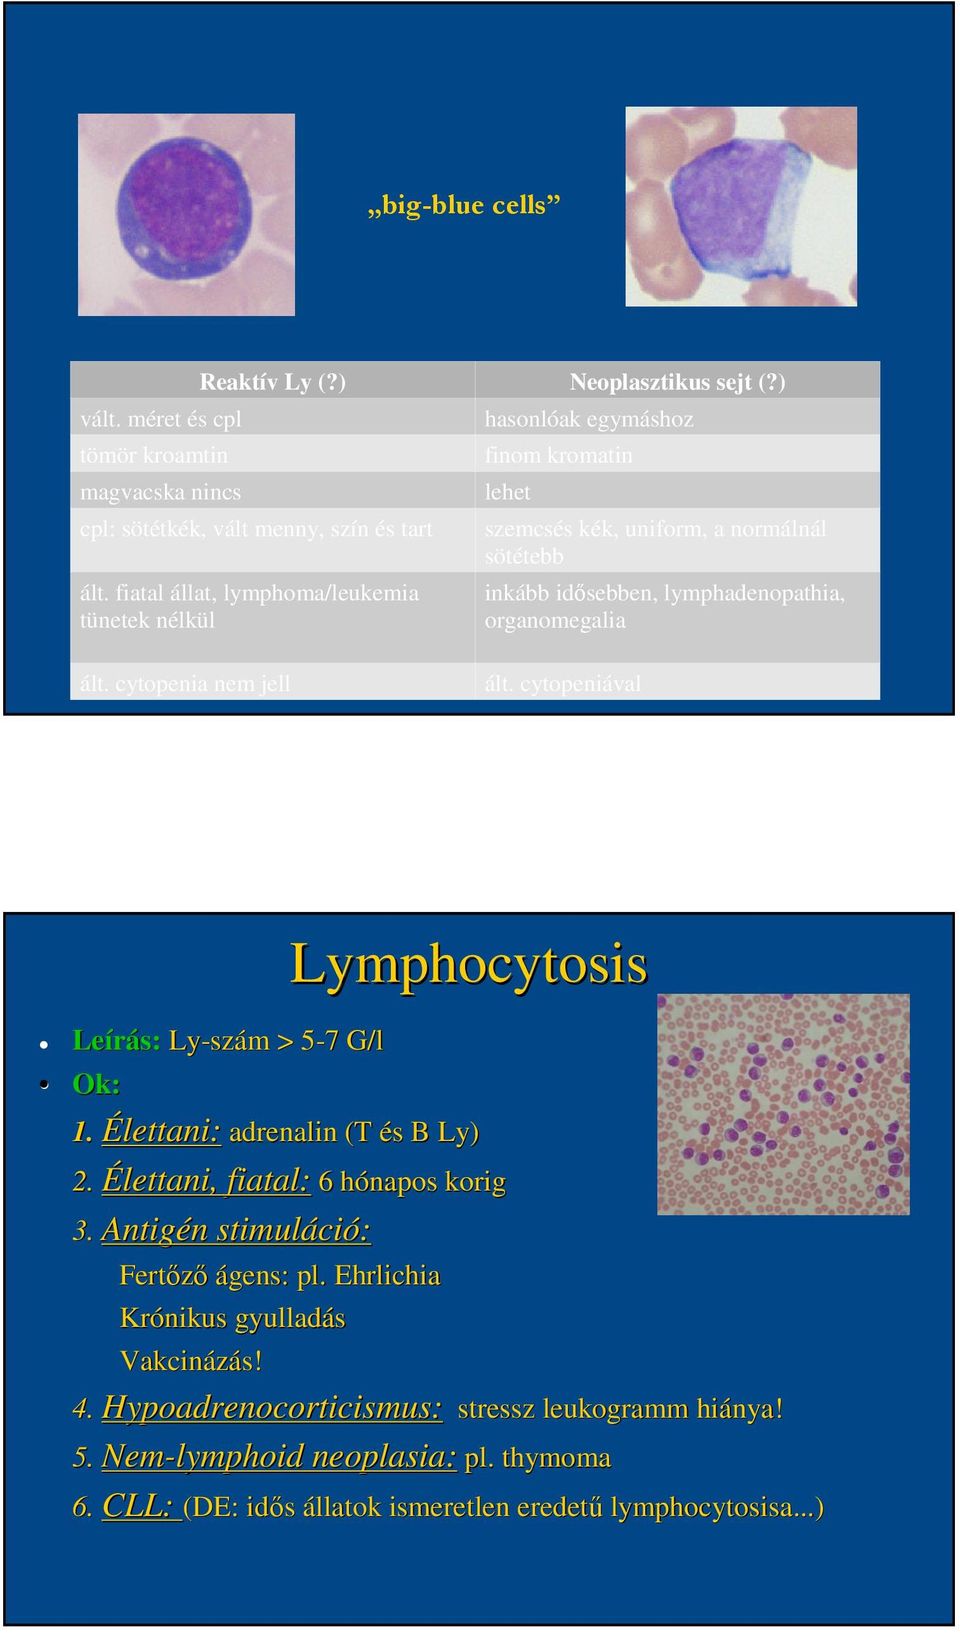 ált. cytopenia nem jell ált. cytopeniával Leírás: Ly-szám > 5-75 7 G/l Lymphocytosis Ok: 1. Élettani: adrenalin (T és B Ly) 2. Élettani, fiatal: 6 hónapos korig 3.